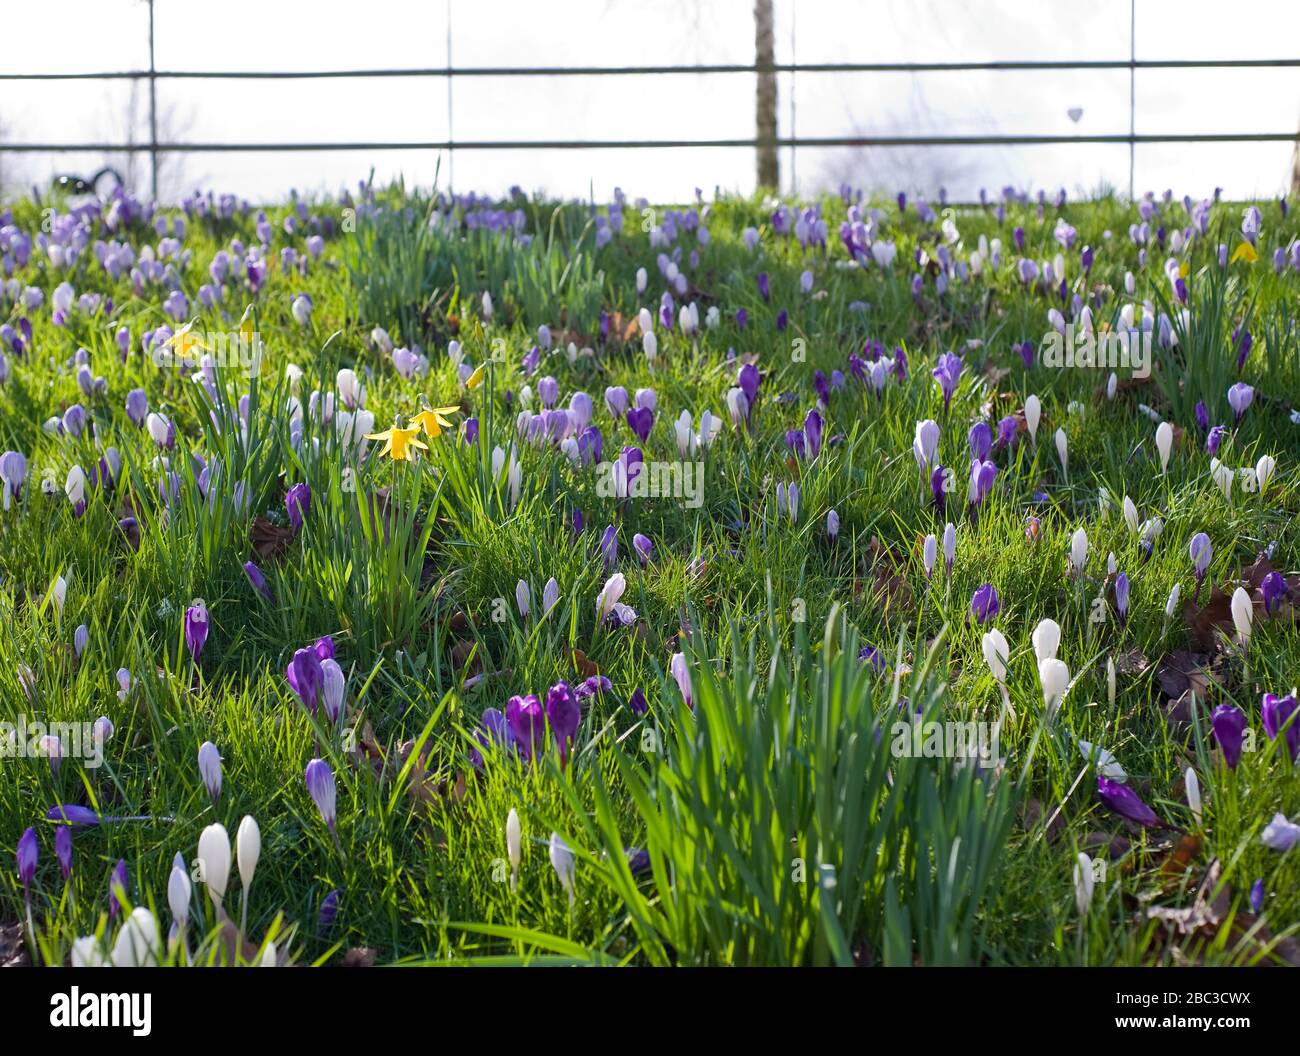 Ein Feld von violetten und weißen Krokussen mit einer Handvoll Narzissen, die aus dem Boden hervorgehen, wenn sich der Frühling dem Vereinigten Königreich nähert. Blumen am Hang Stockfoto